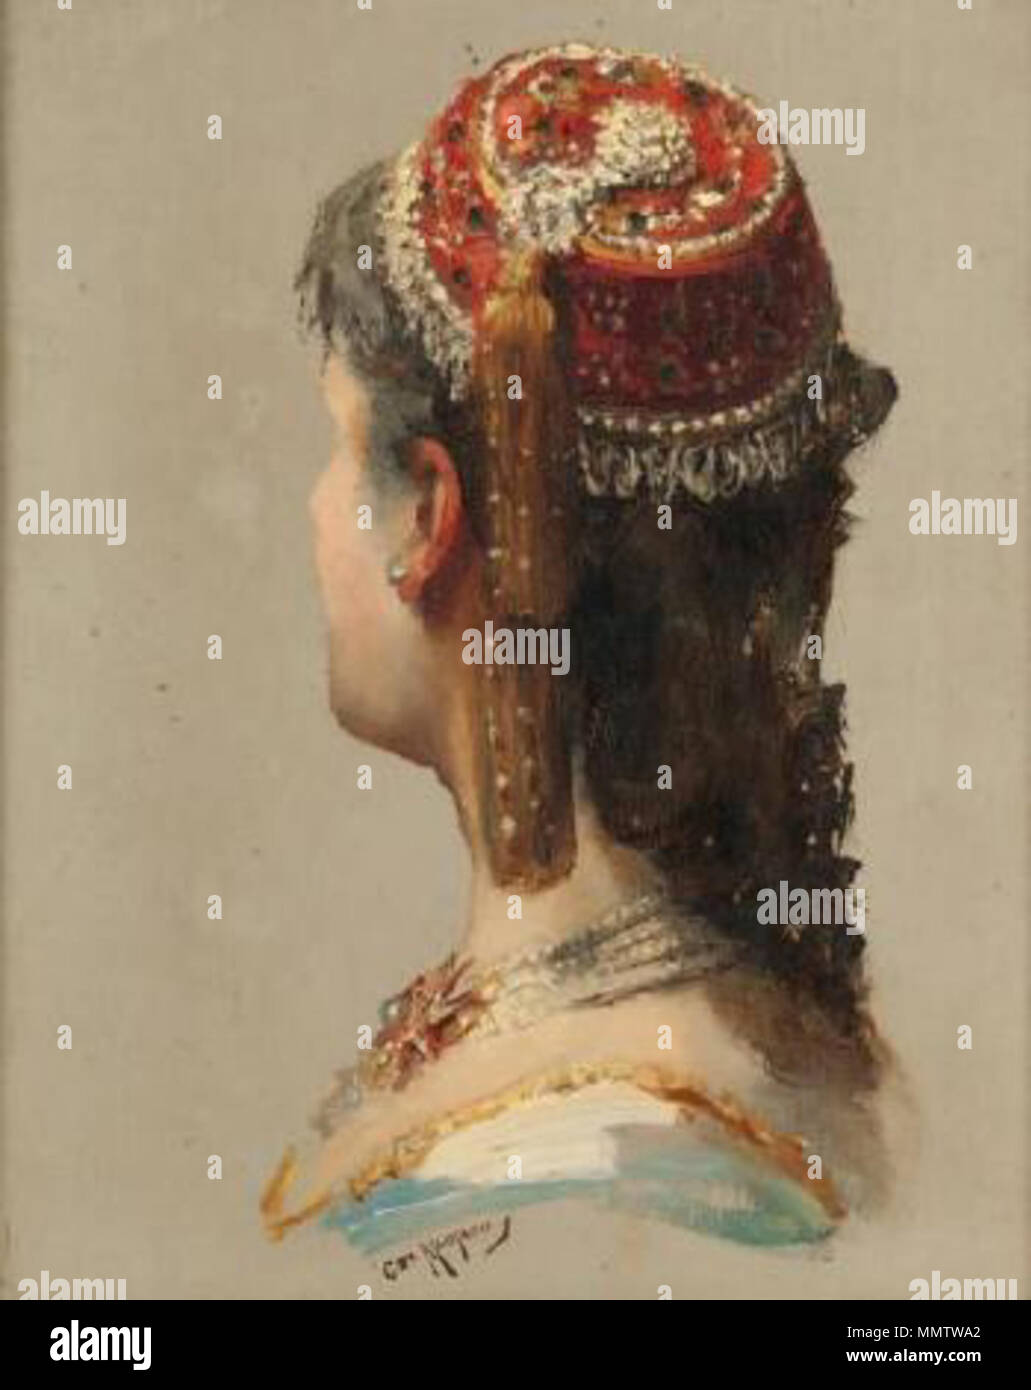 Anglais : Portrait of a woman in a red hat oriental . Entre 1850 et 1915.  Caroline de Maupeou (1836-1915) Noms alternatifs Caroline von Maupeou ;  Caroline Koechlin, comtesse de Maupeou